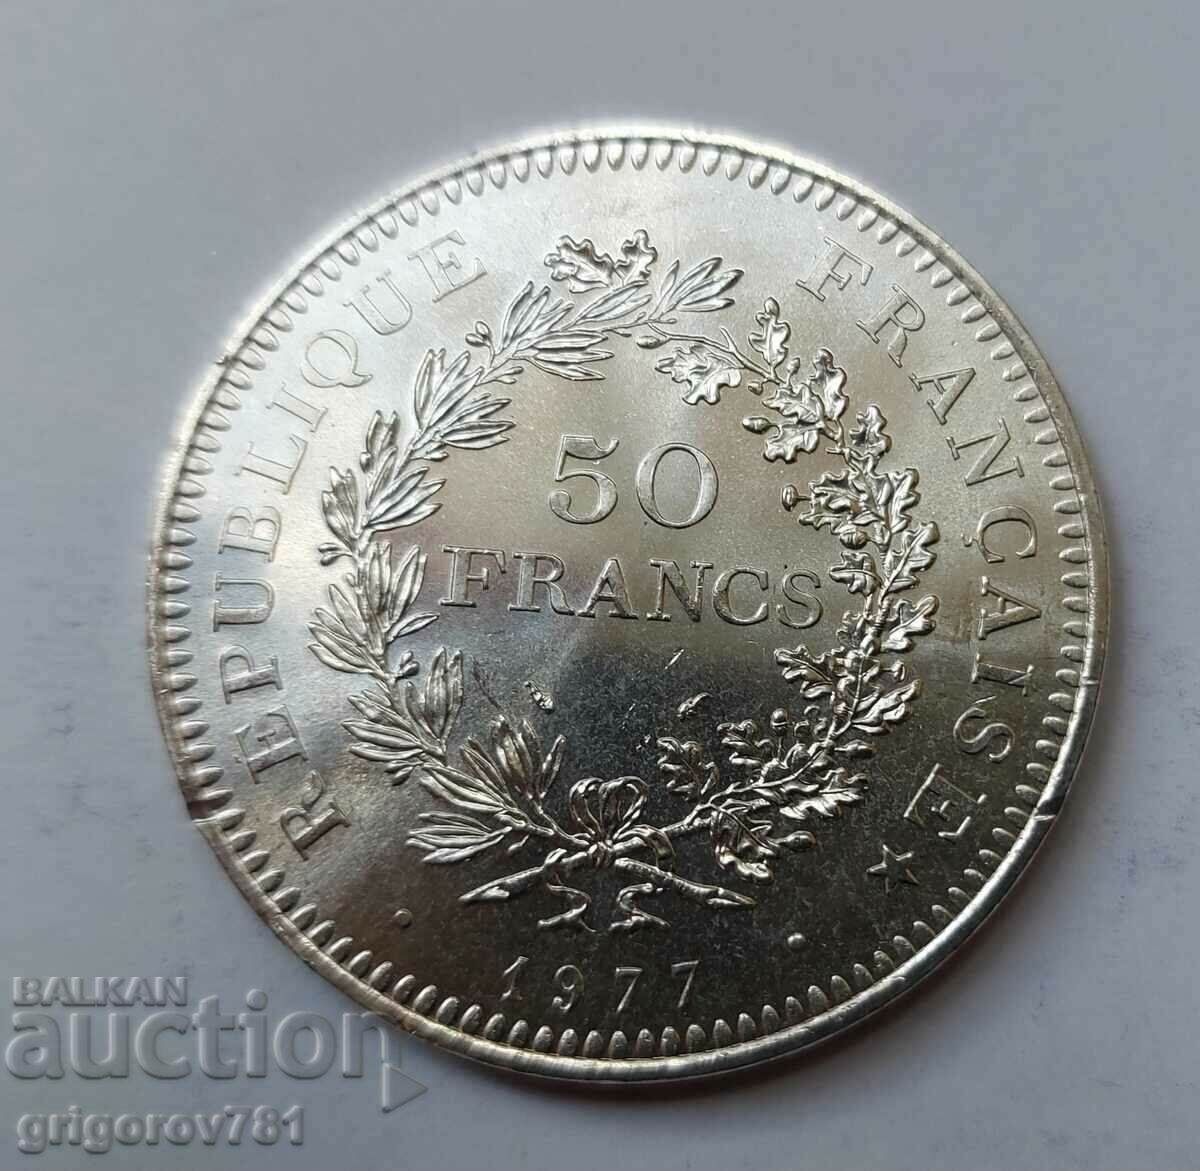 50 Franci Argint Franta 1977 - Moneda de argint #48